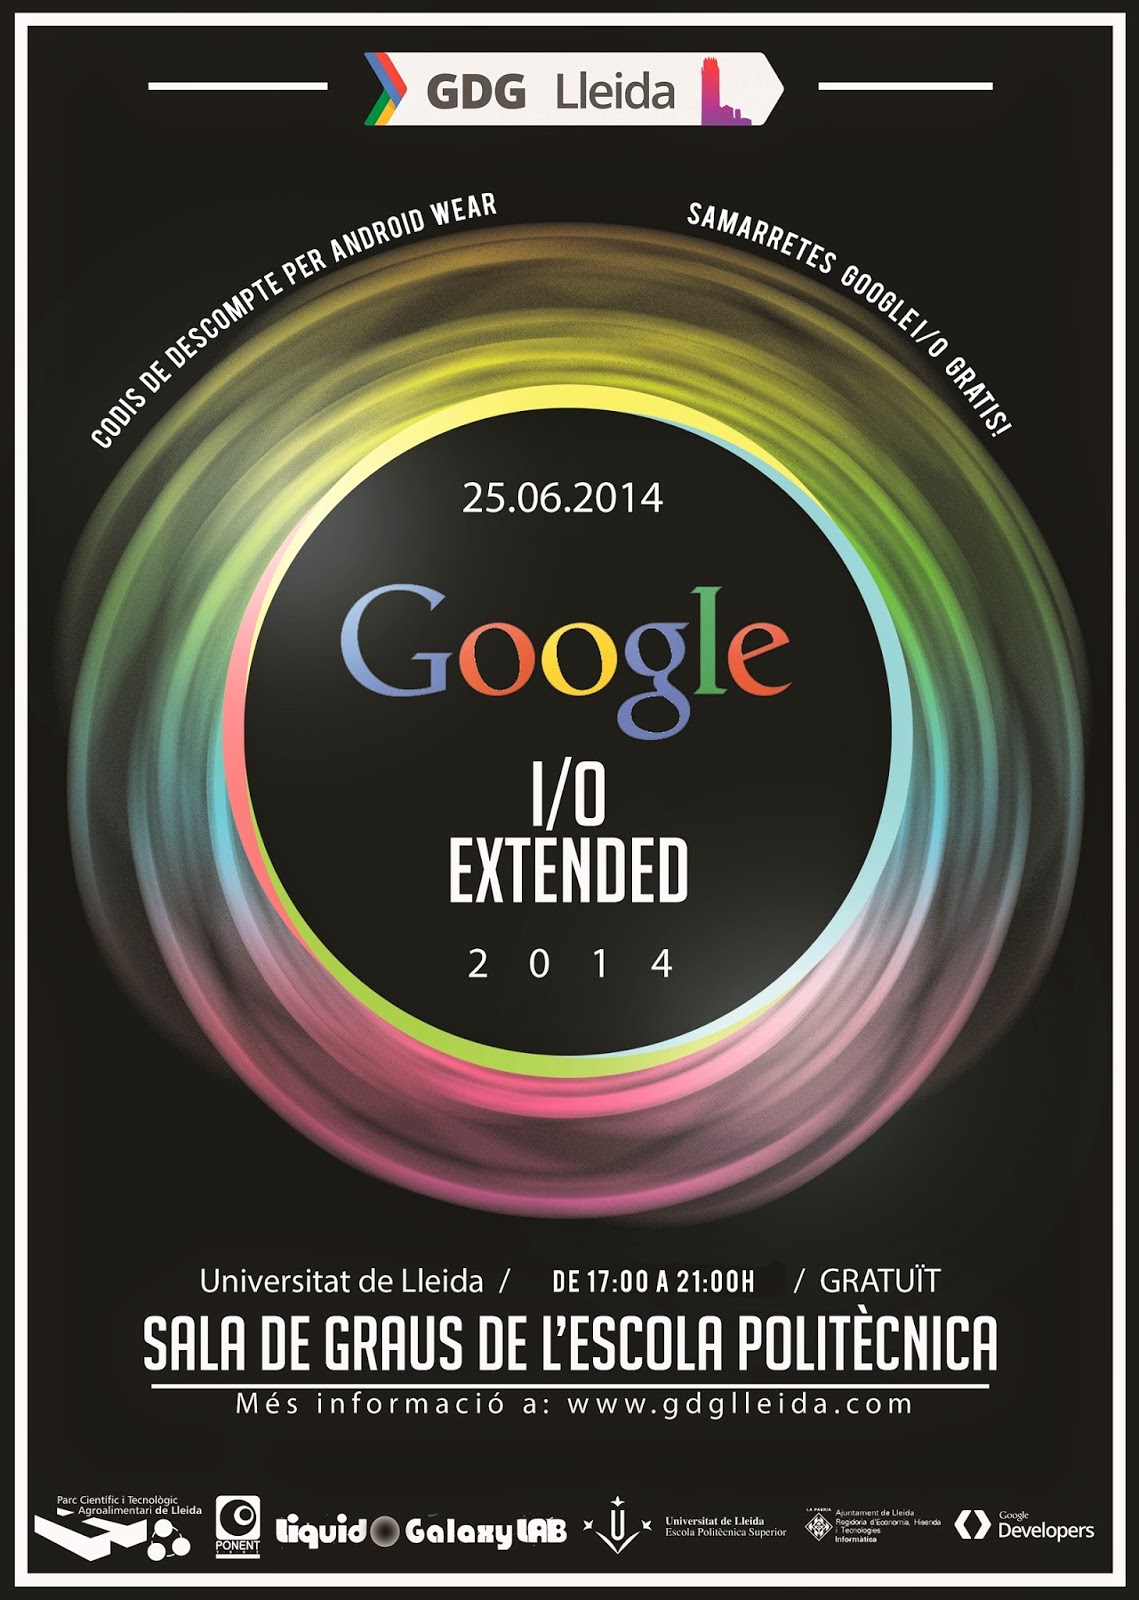 Parece ser que vamos a regalar vales descuento de #AndroidWear y camisetas en el Google I/O Extended de #Lleida